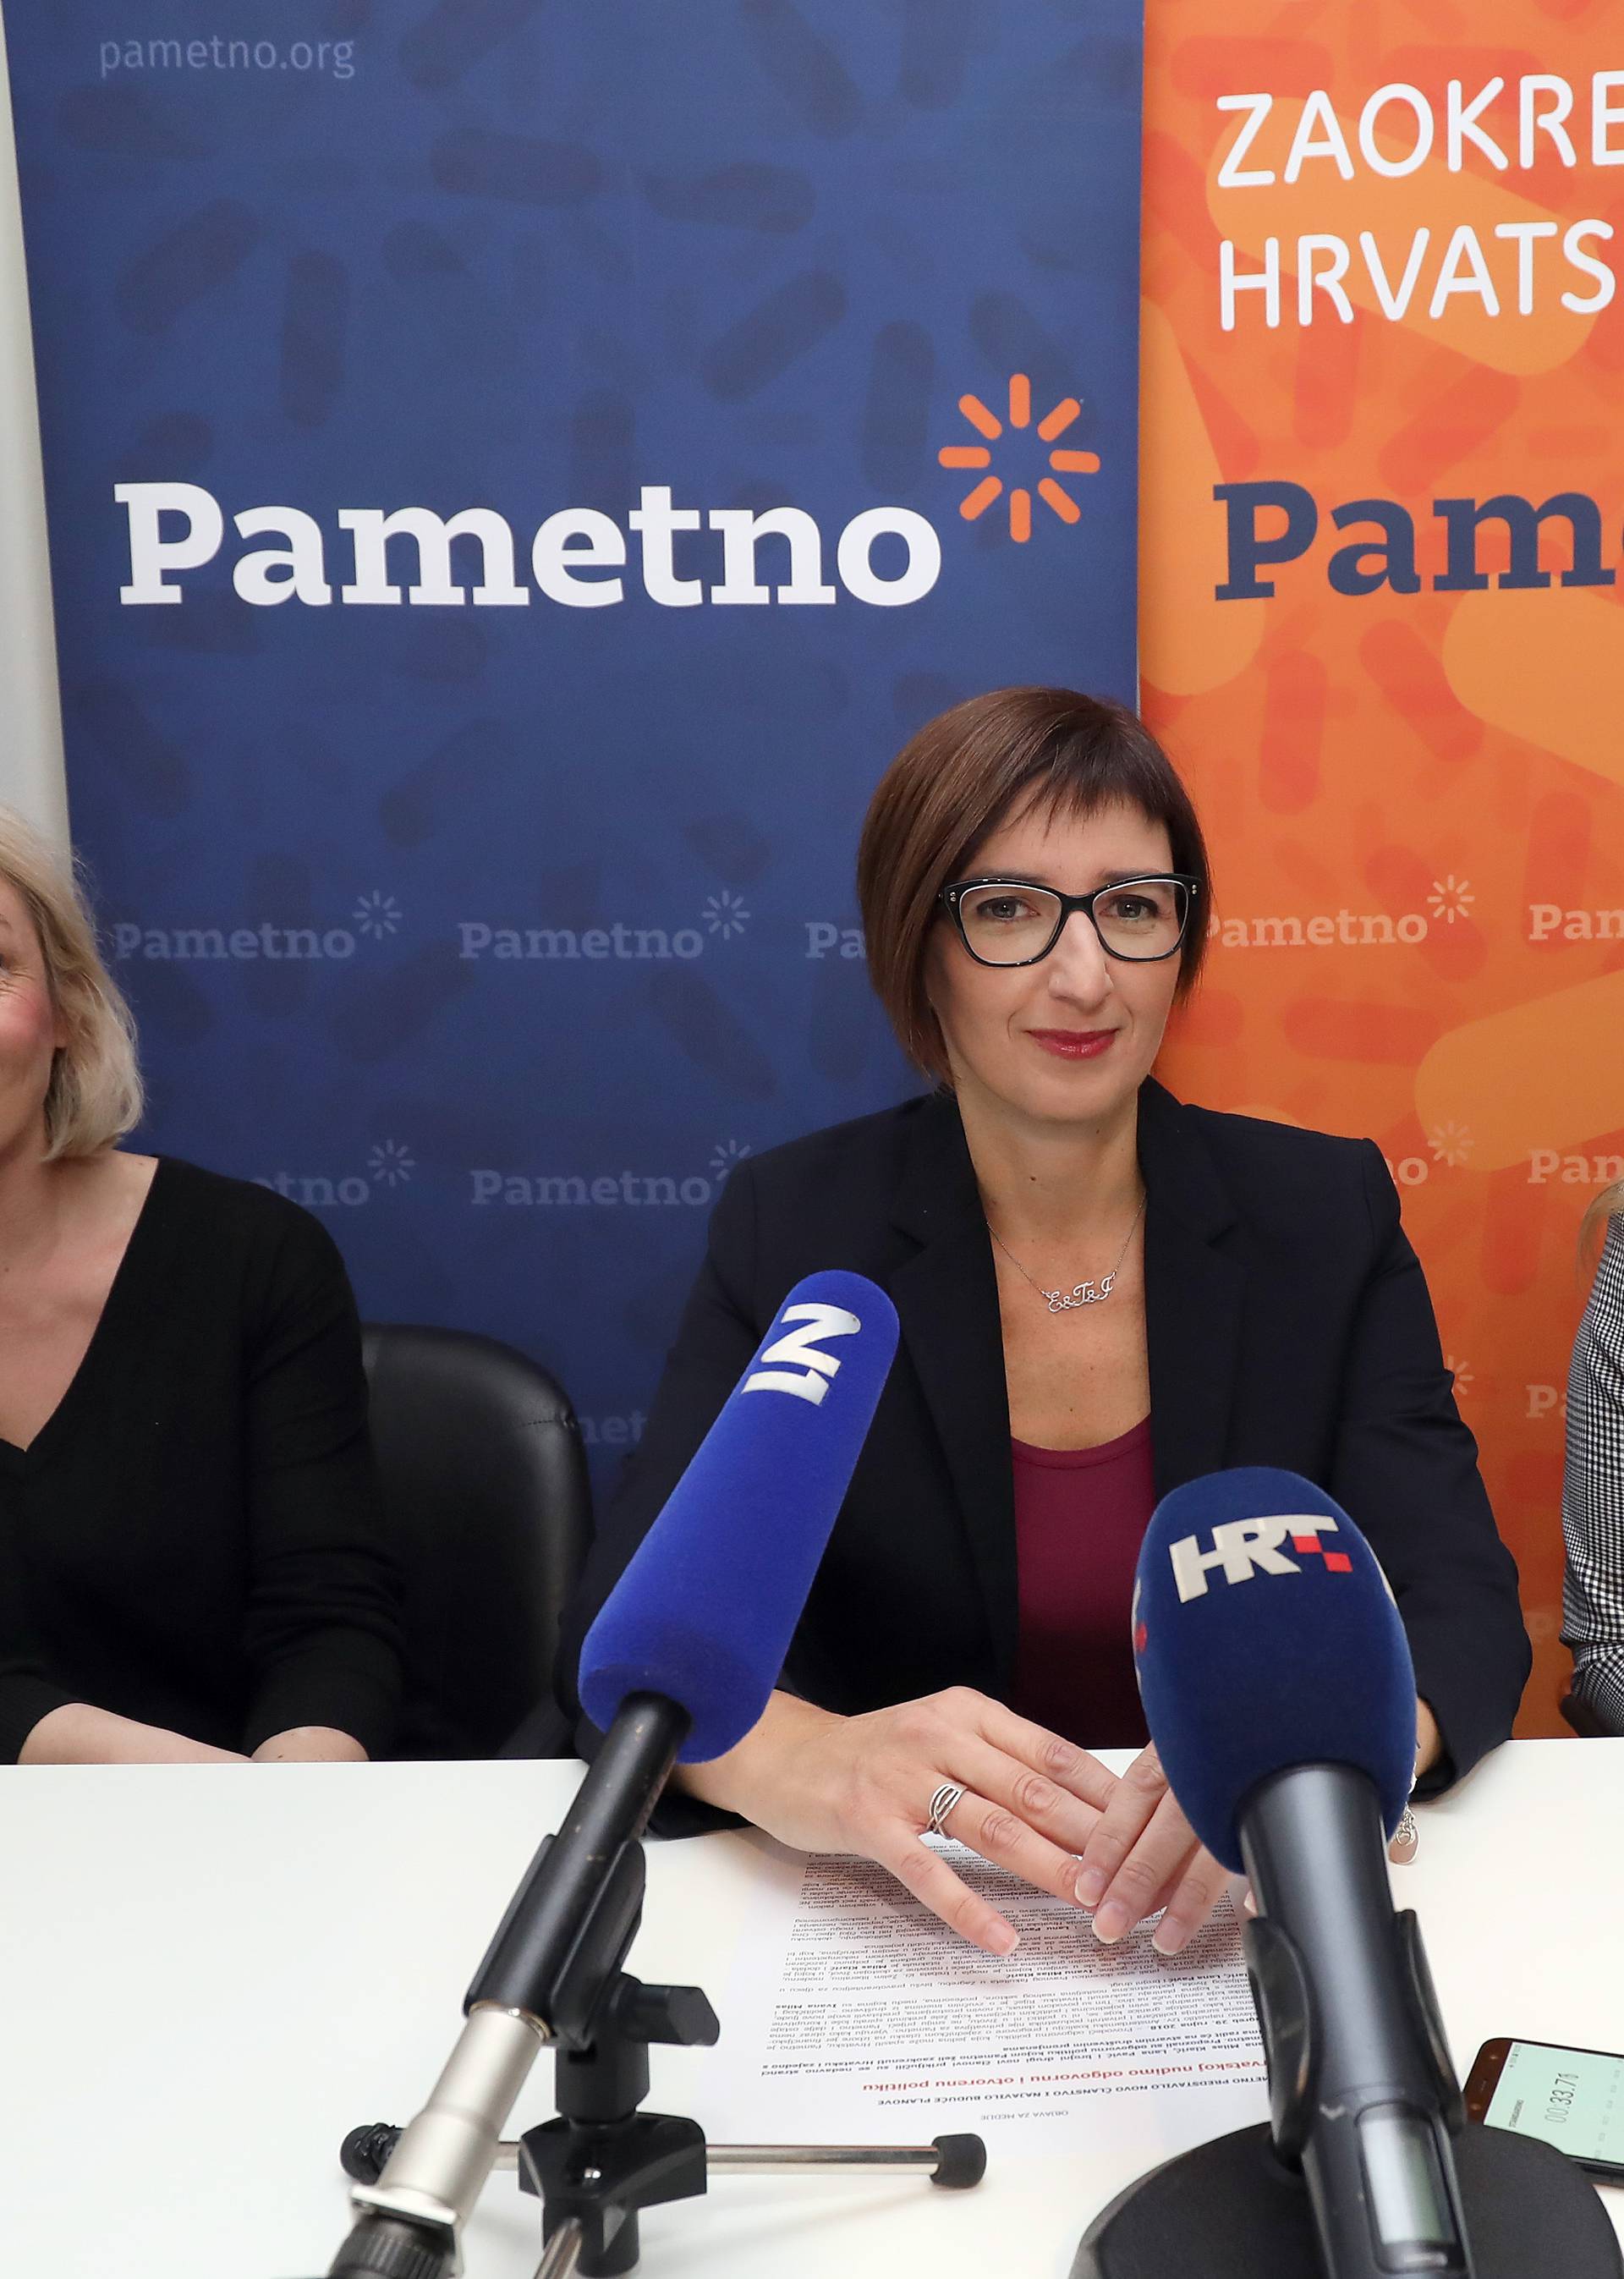 Zagreb: Stranka Pametno predstavila svoje novosti i nove planove